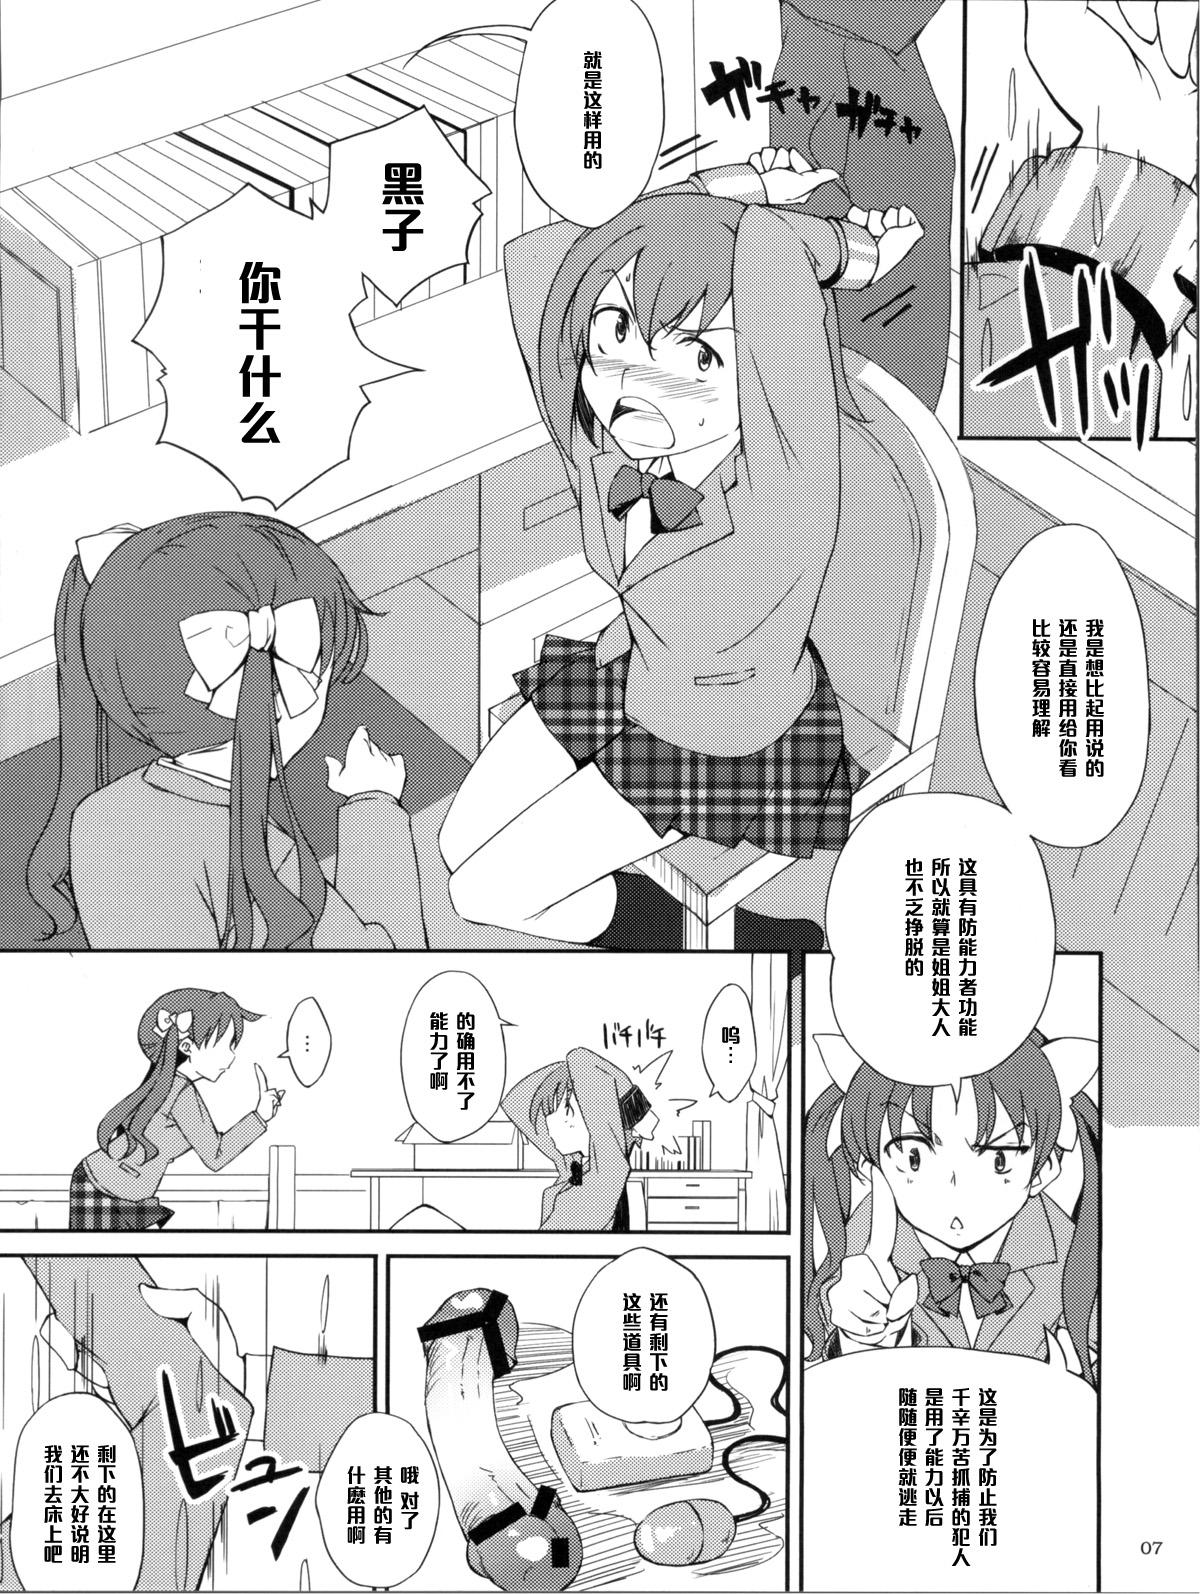 Rub Desu no!! - Toaru kagaku no railgun Classy - Page 7